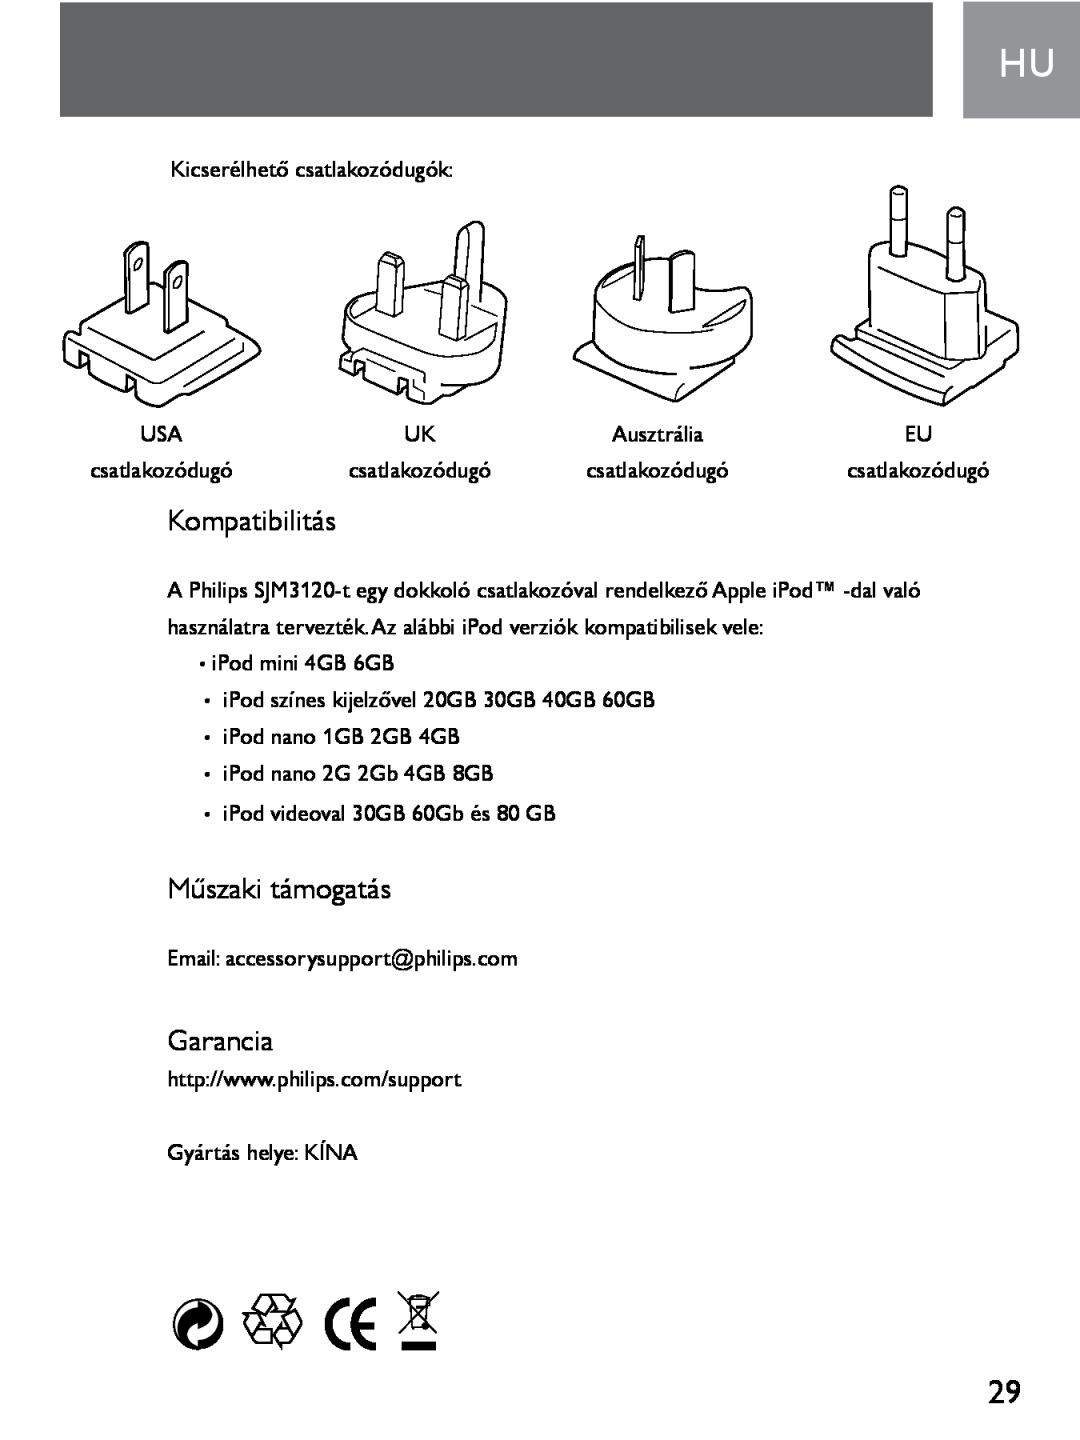 Philips SJM3120 user manual Kompatibilitás, Műszaki támogatás, Garancia 